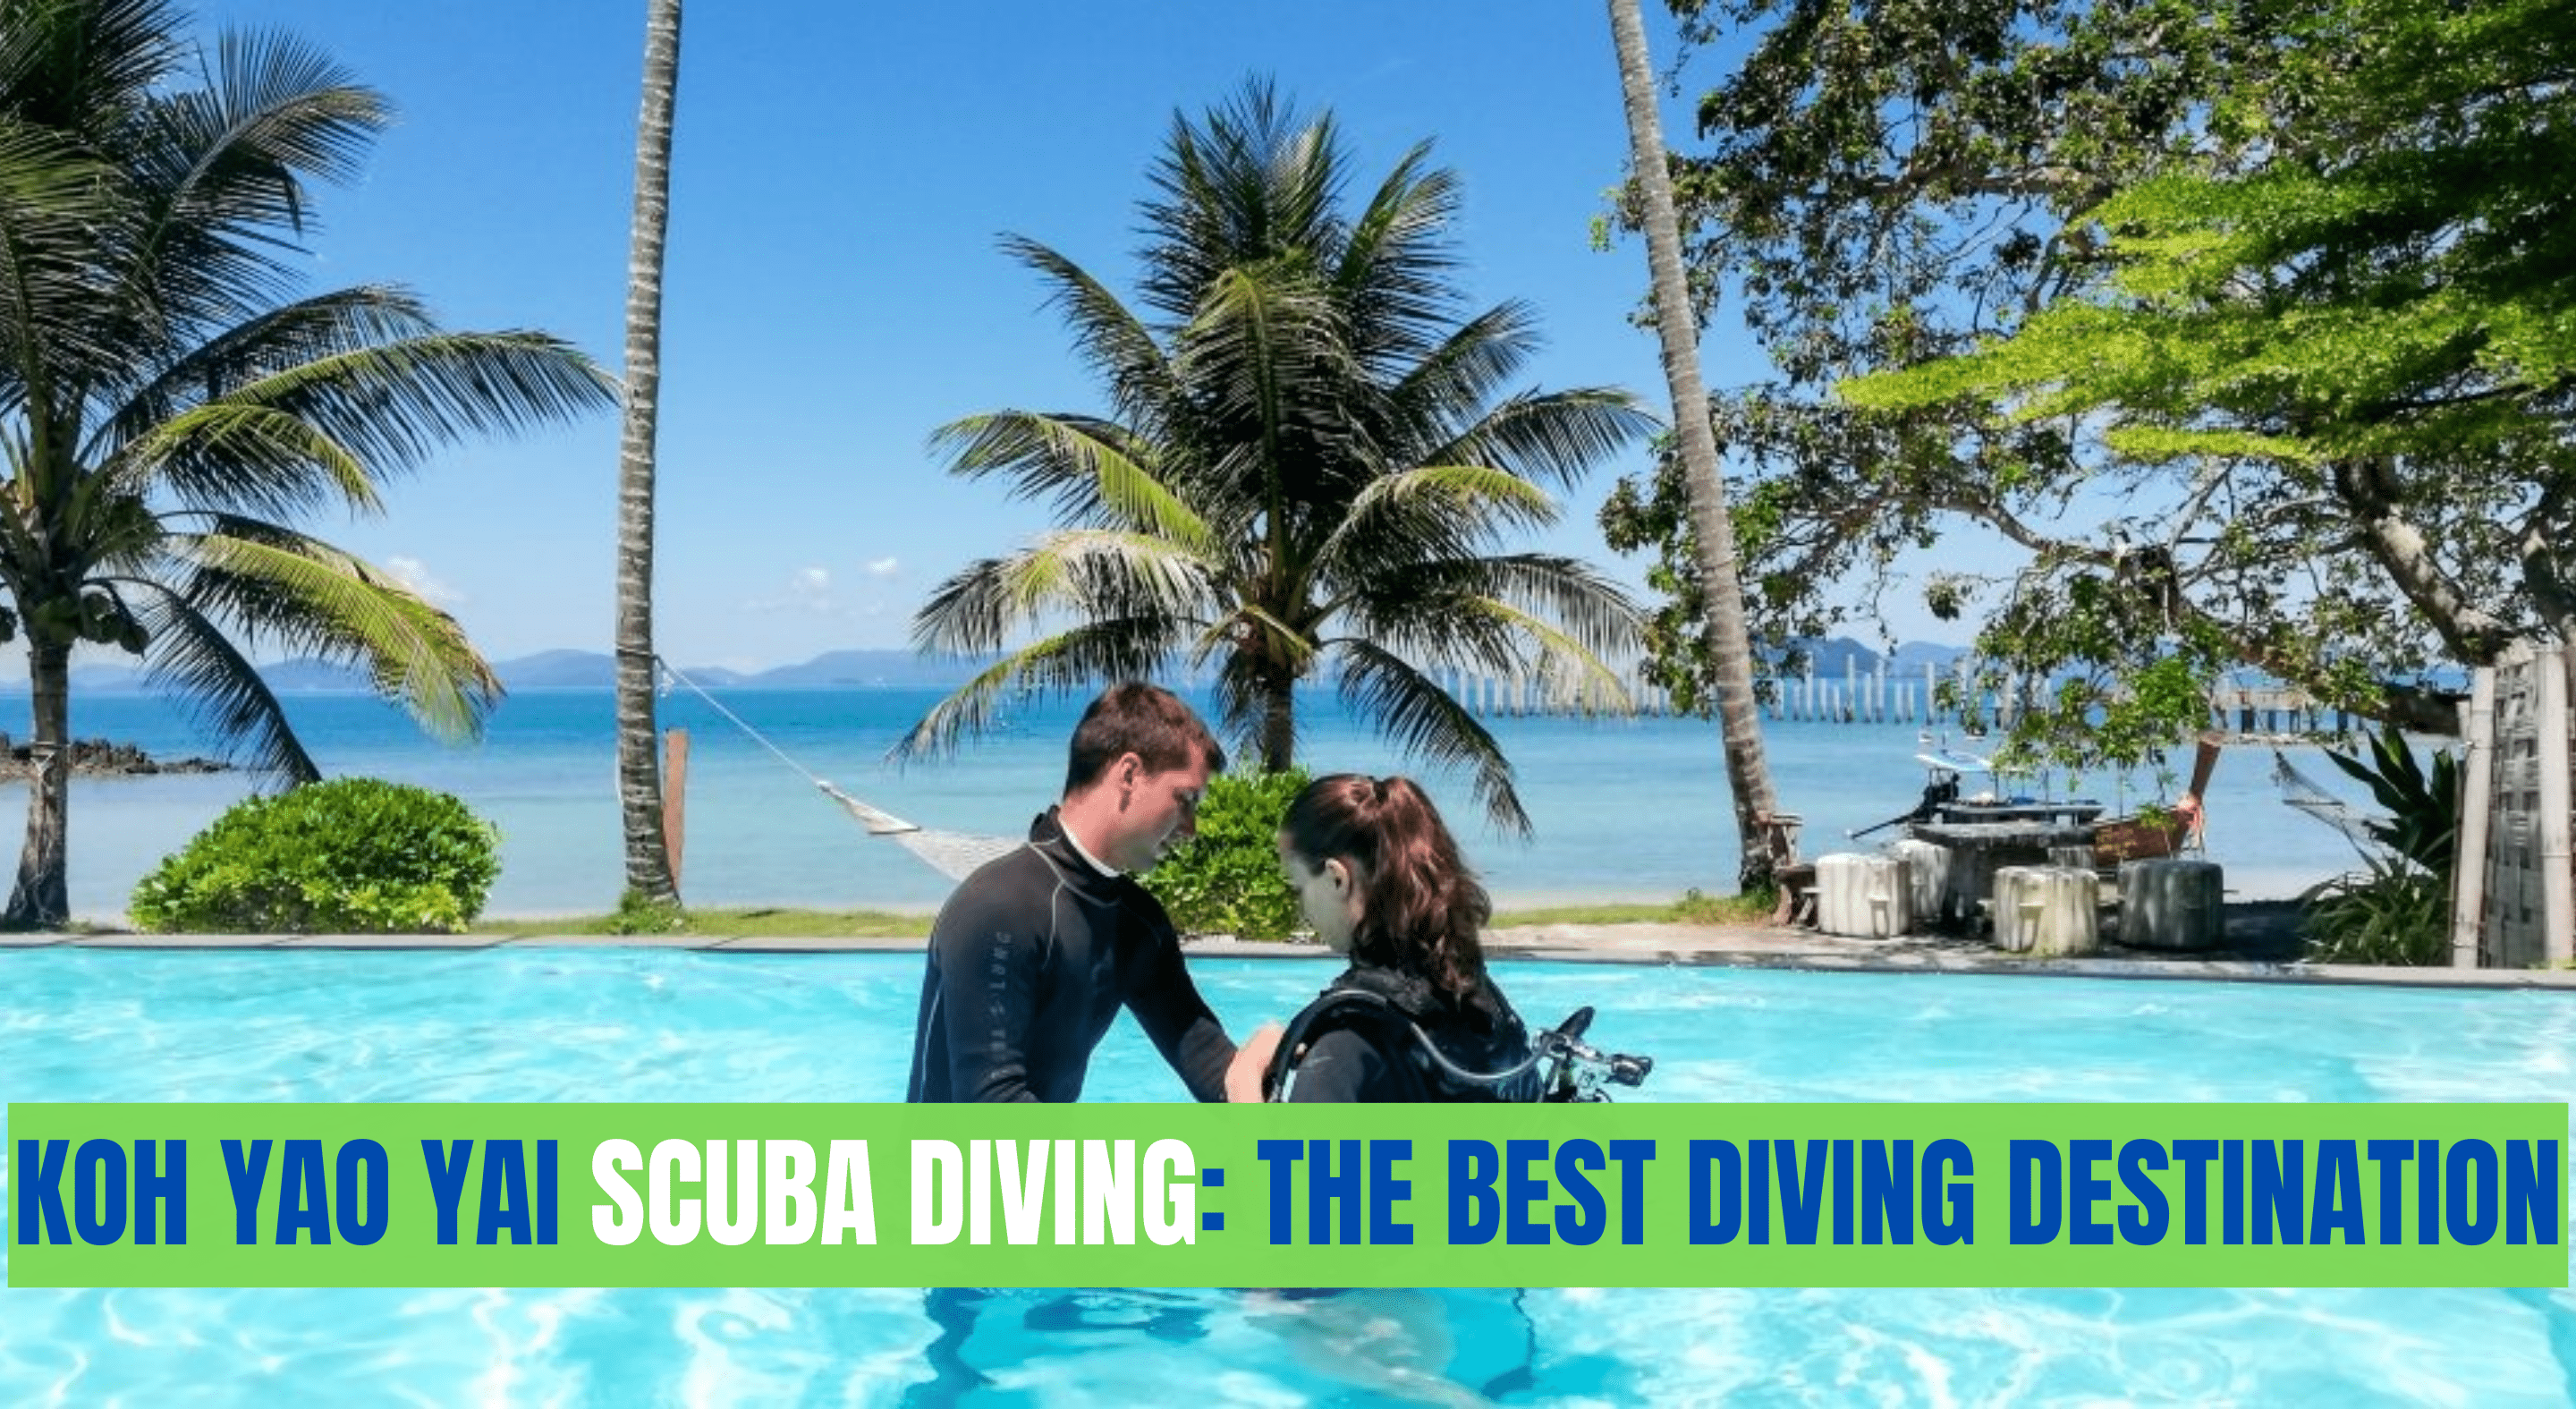 Koh Yao Yai Scuba Diving: The Best Diving Destination